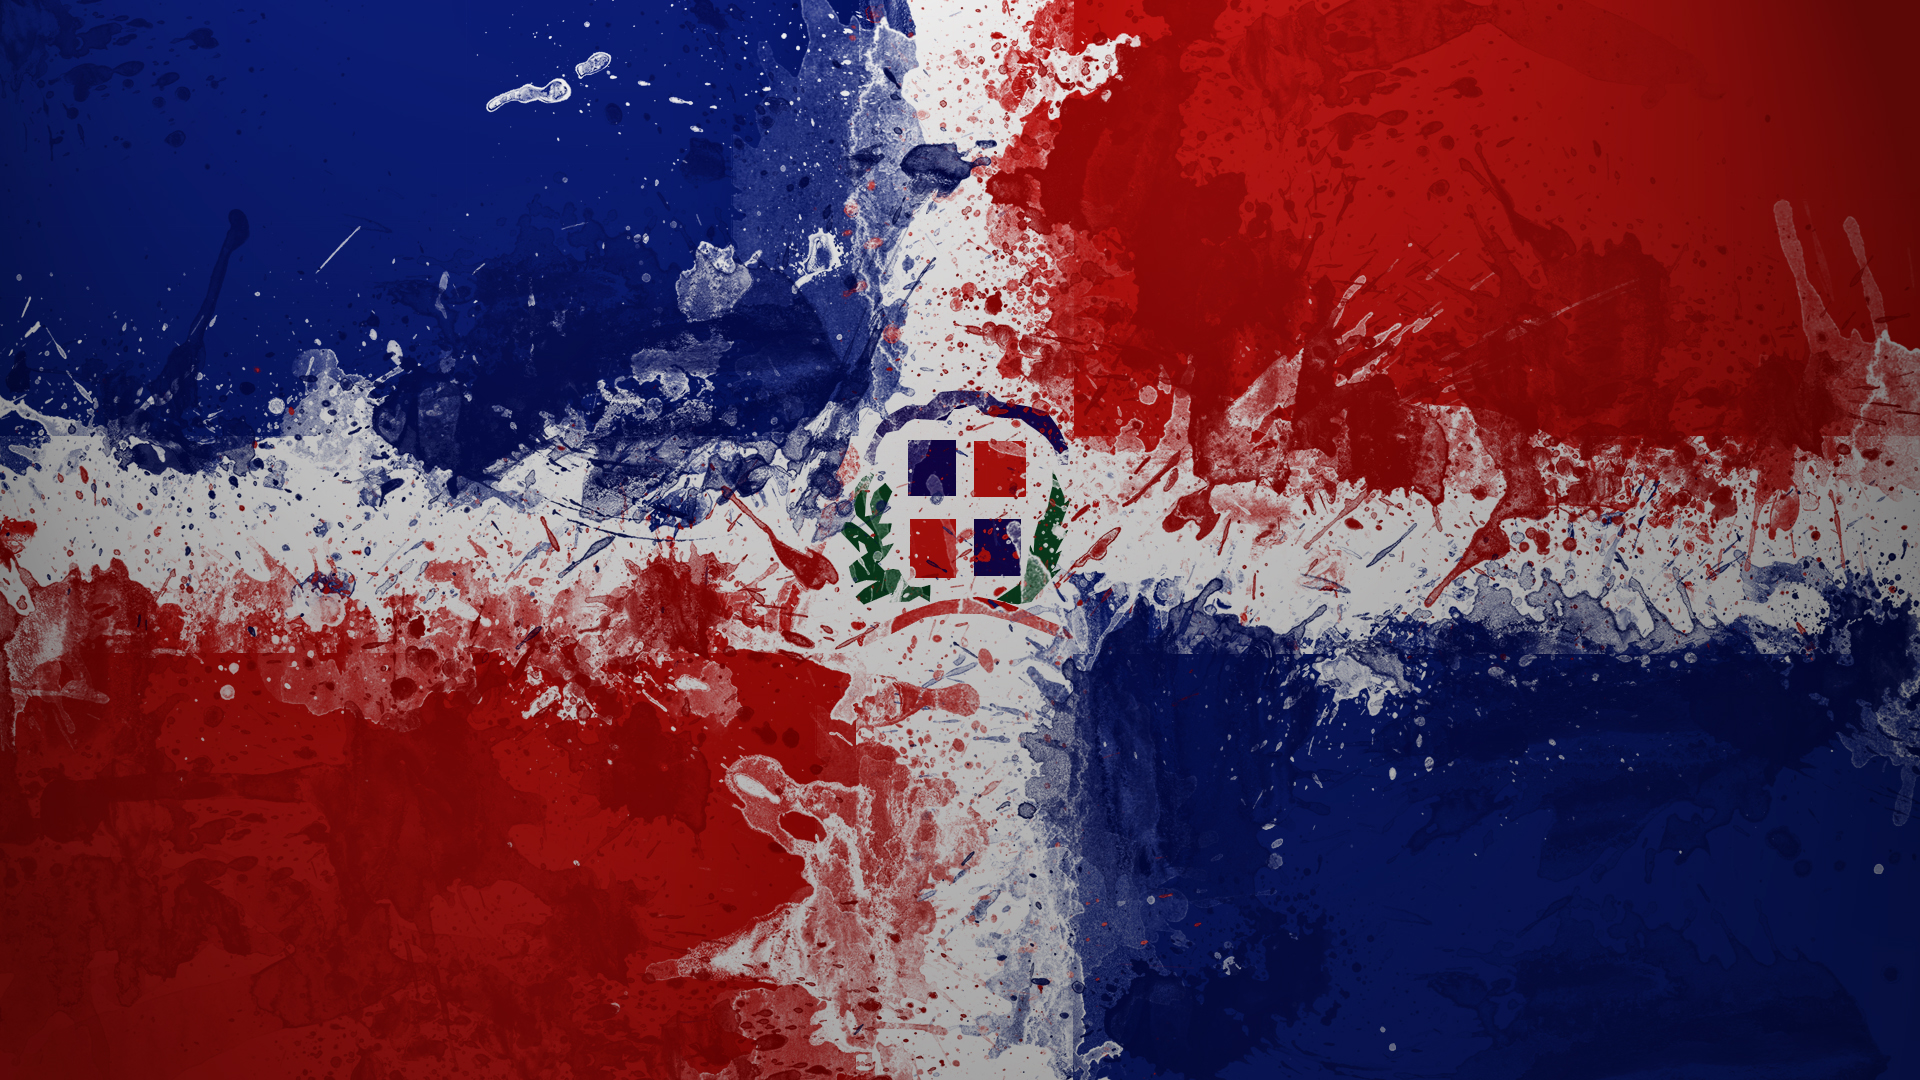 Flags Dominican Republic HD Wallpaper General